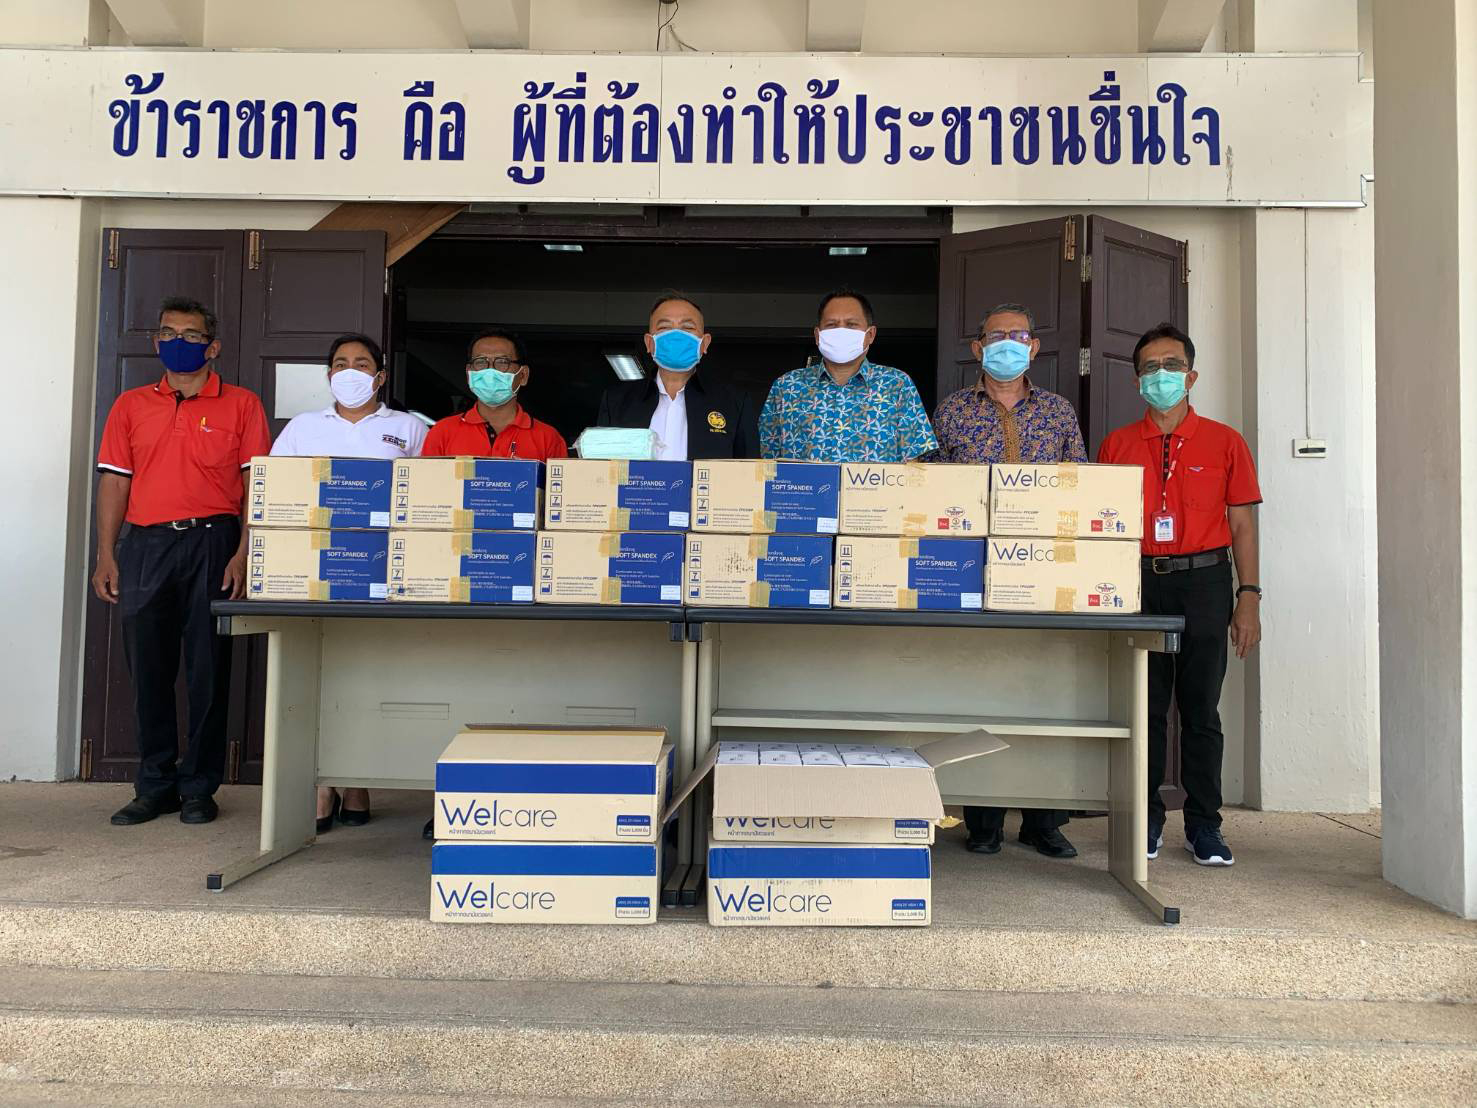 ไปรษณีย์ไทย อาสาหน่วยงานรัฐร่วมส่งต่อความห่วงใยถึงทีมแพทย์ เผยส่งหน้ากากอนามัยถึงมือหมอทุกชิ้น